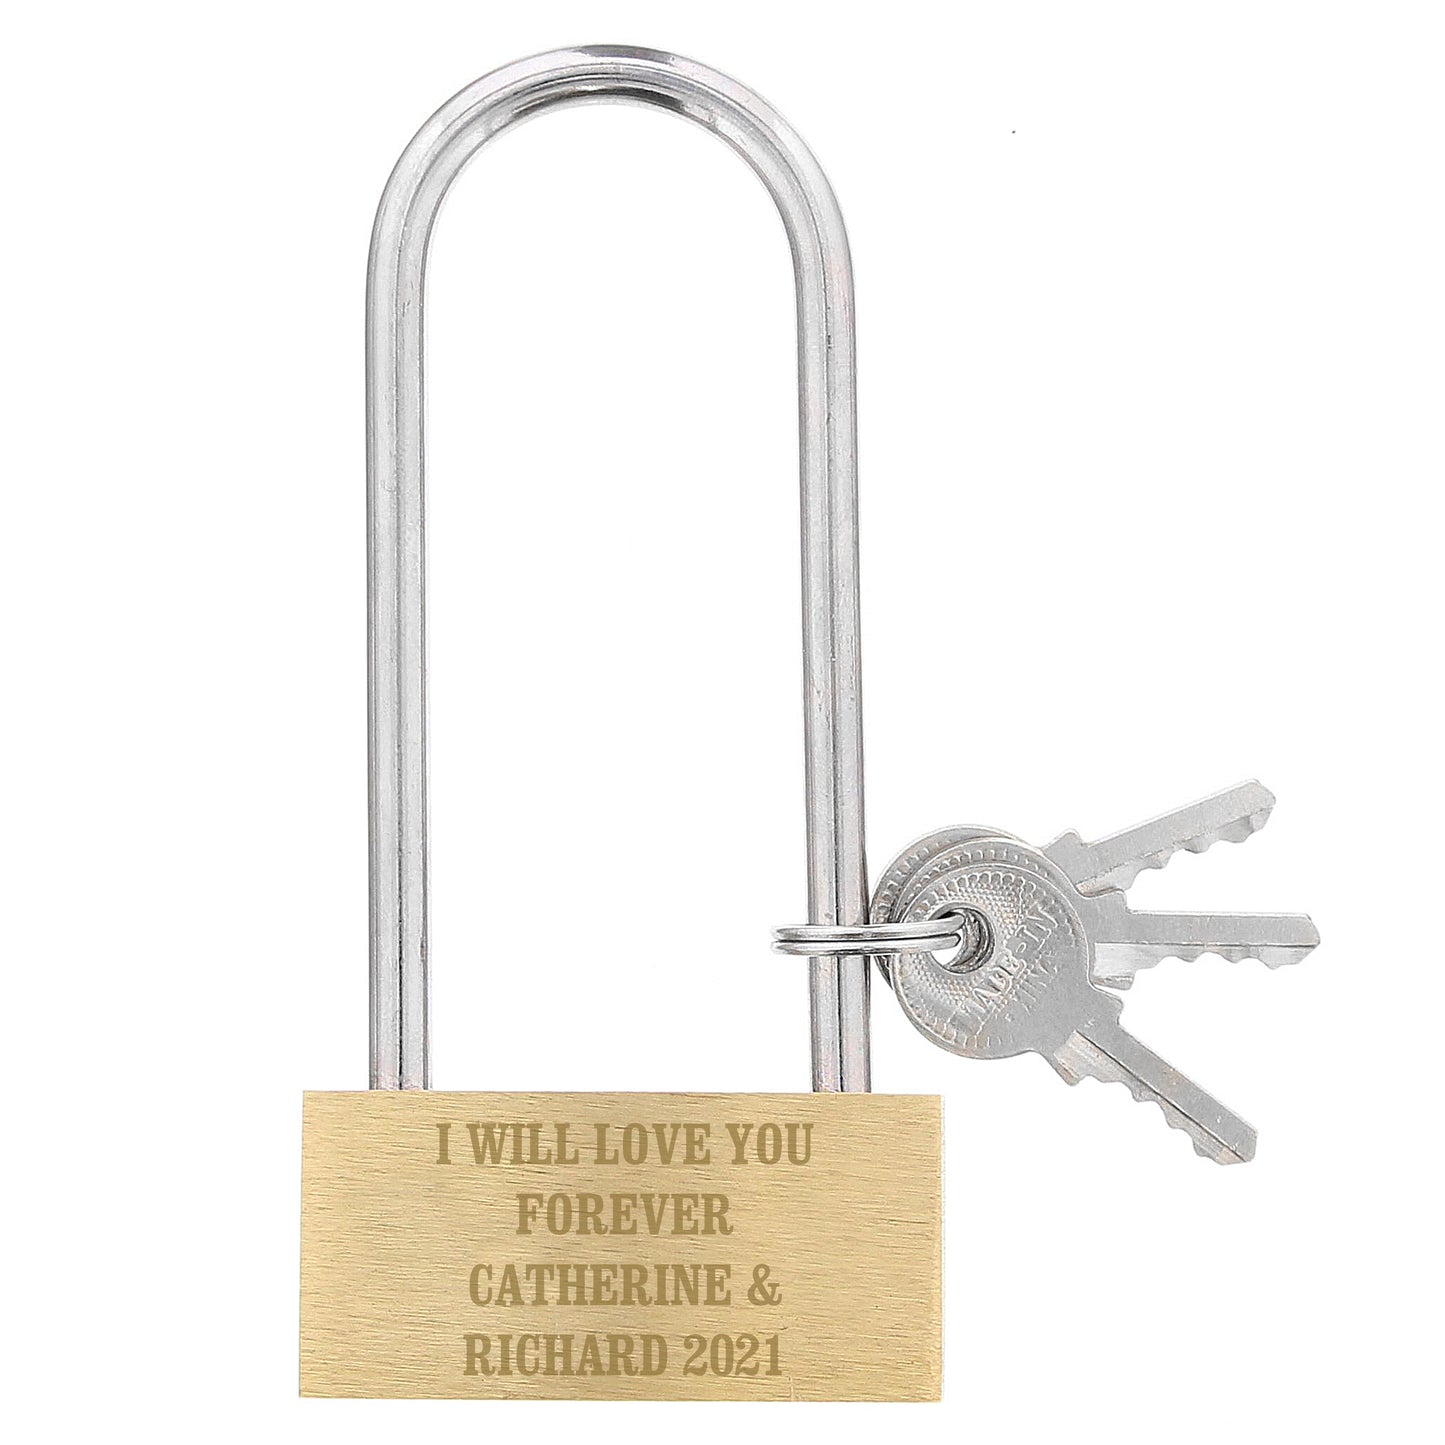 Personalised padlock - Lilybet loves